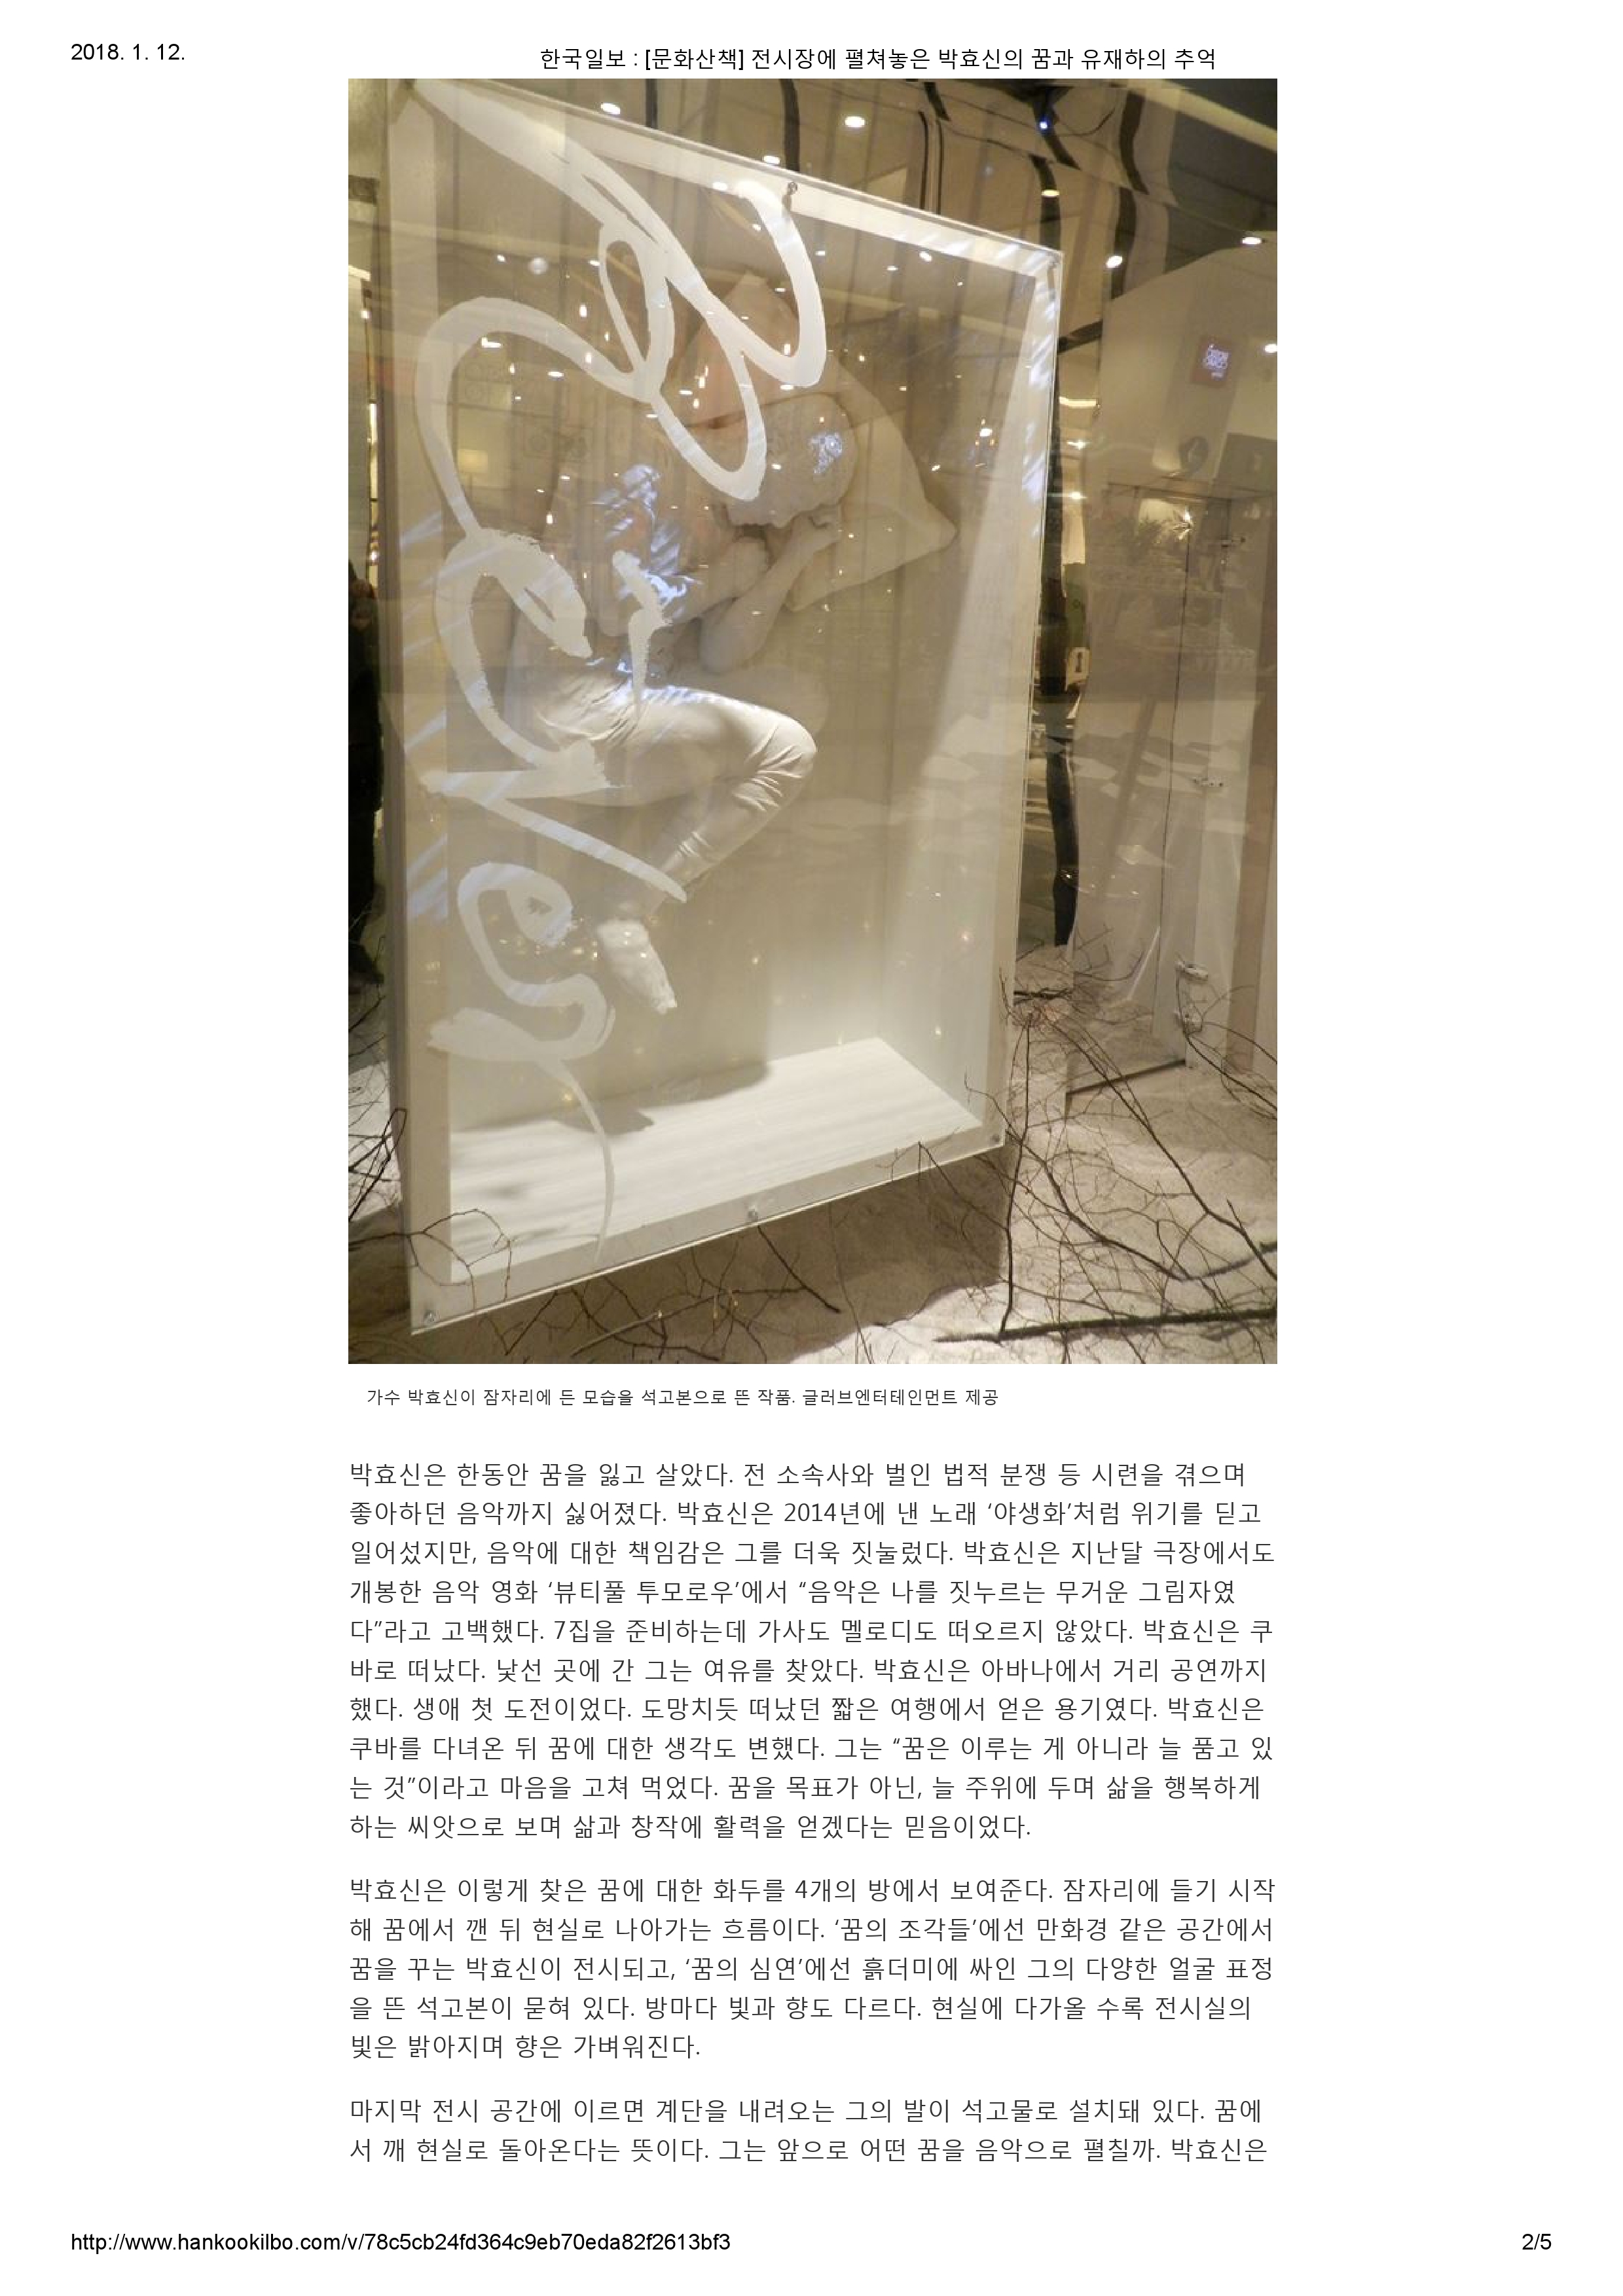 20171215_한국일보_[문화산책] 전시장에 펼쳐놓은 박효신의 꿈과 유재하의 추억-2.jpg